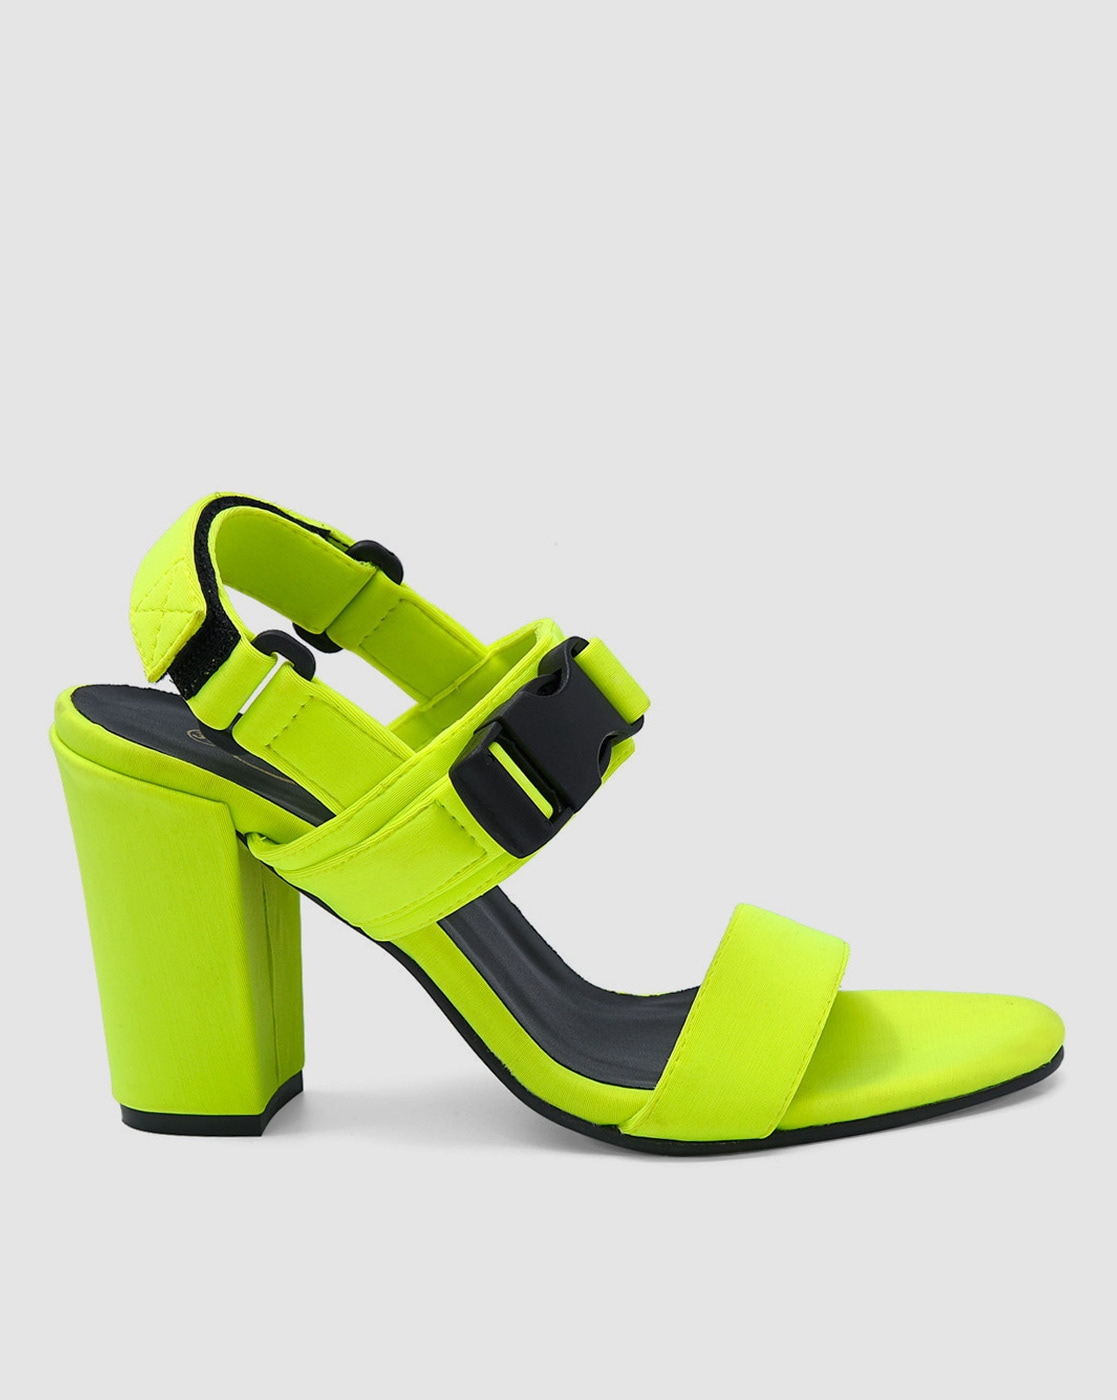 Buy EMERALD GREEN HEELS, Green Wedding Shoes, Mid Block Heels, Green Bridal  Shoes, Forest Green Shoes, Velvet Wedding Heels Online in India - Etsy